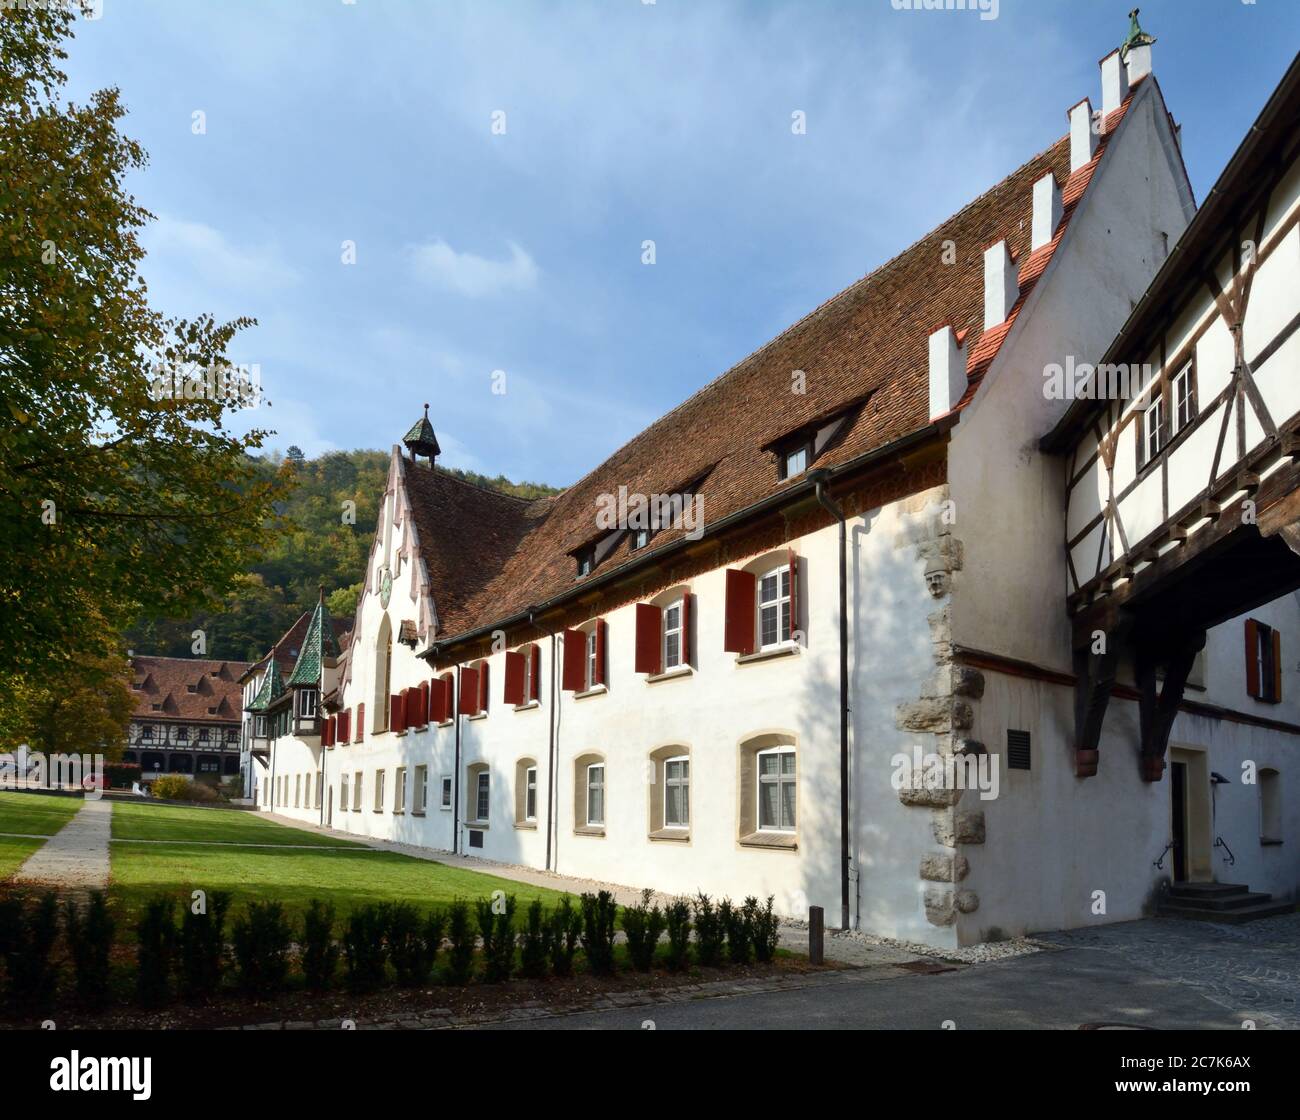 Blaubeuren, Baden-Württemberg, Germany, The Blaubeuren monastery in the half-timbered town of Blaubeuren Stock Photo